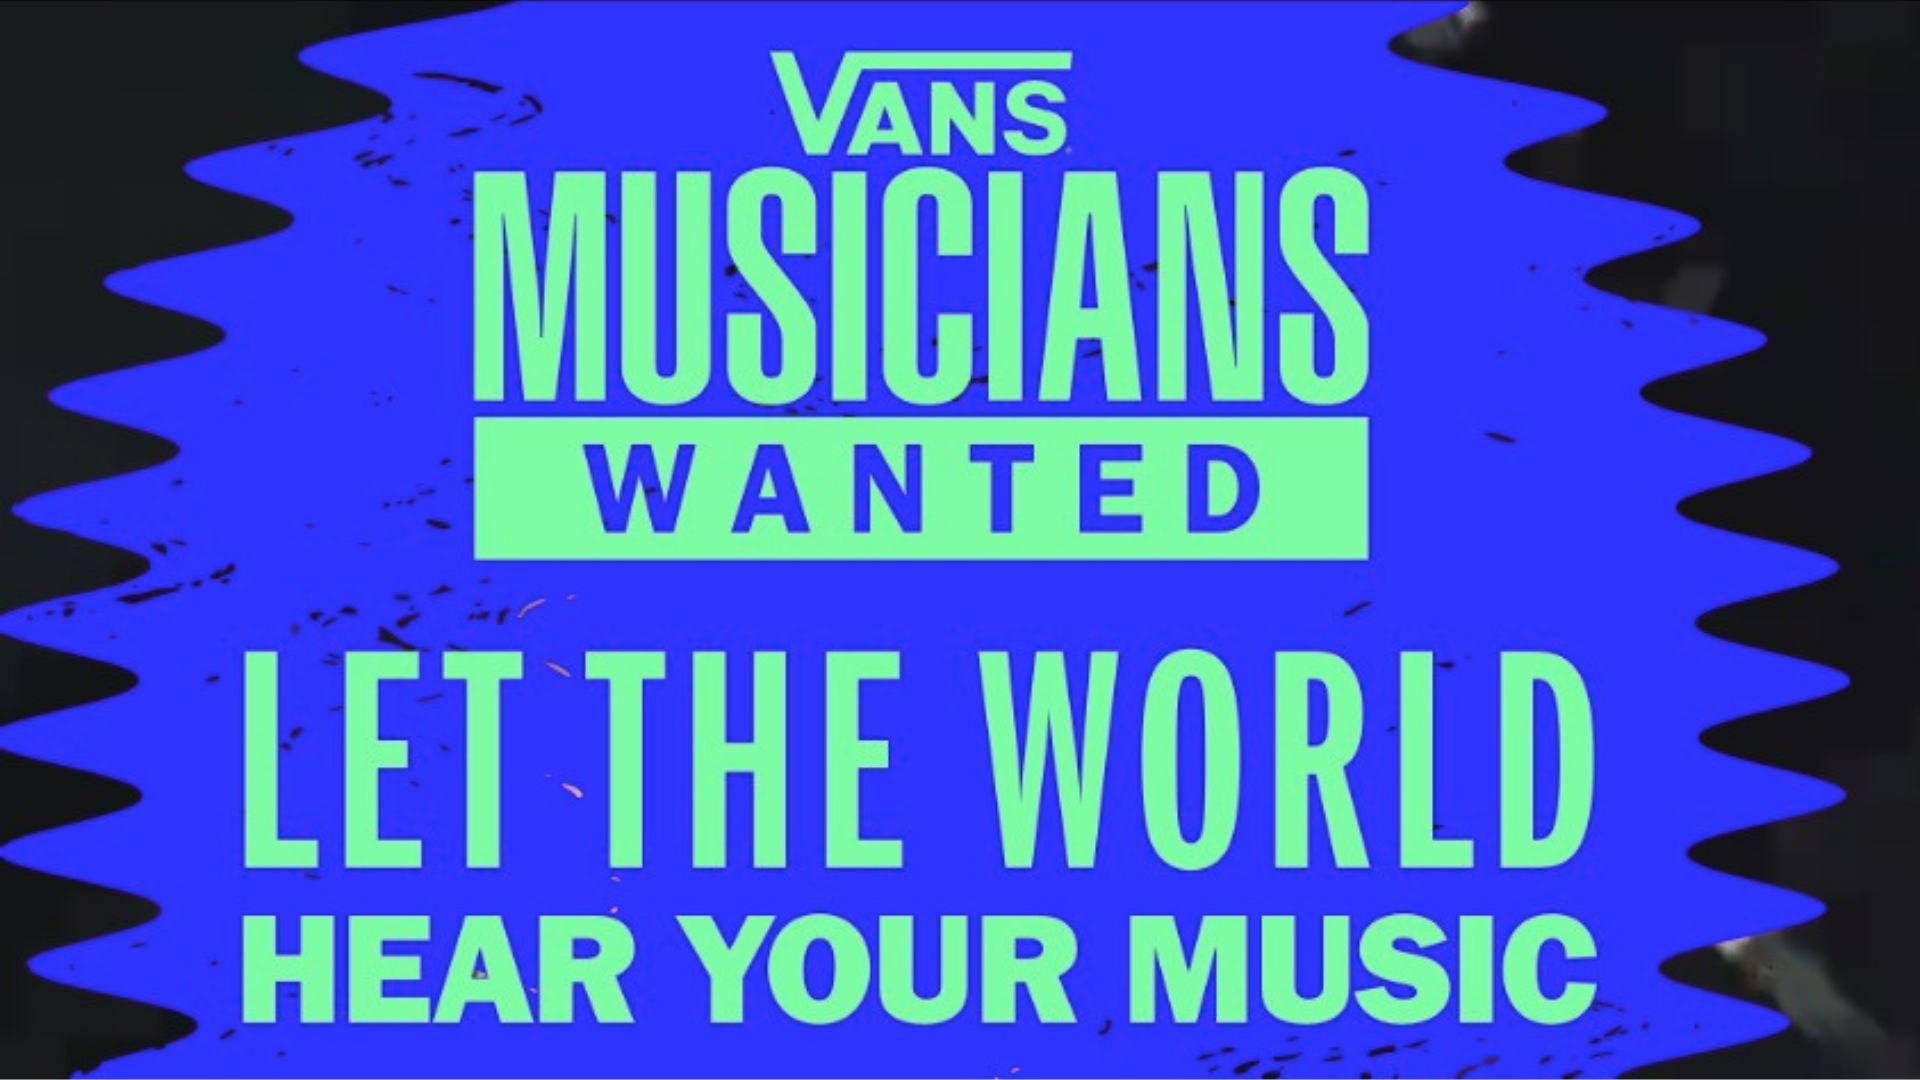 Vans Musicians Wanted, un evento par encontrar nuevos artistas